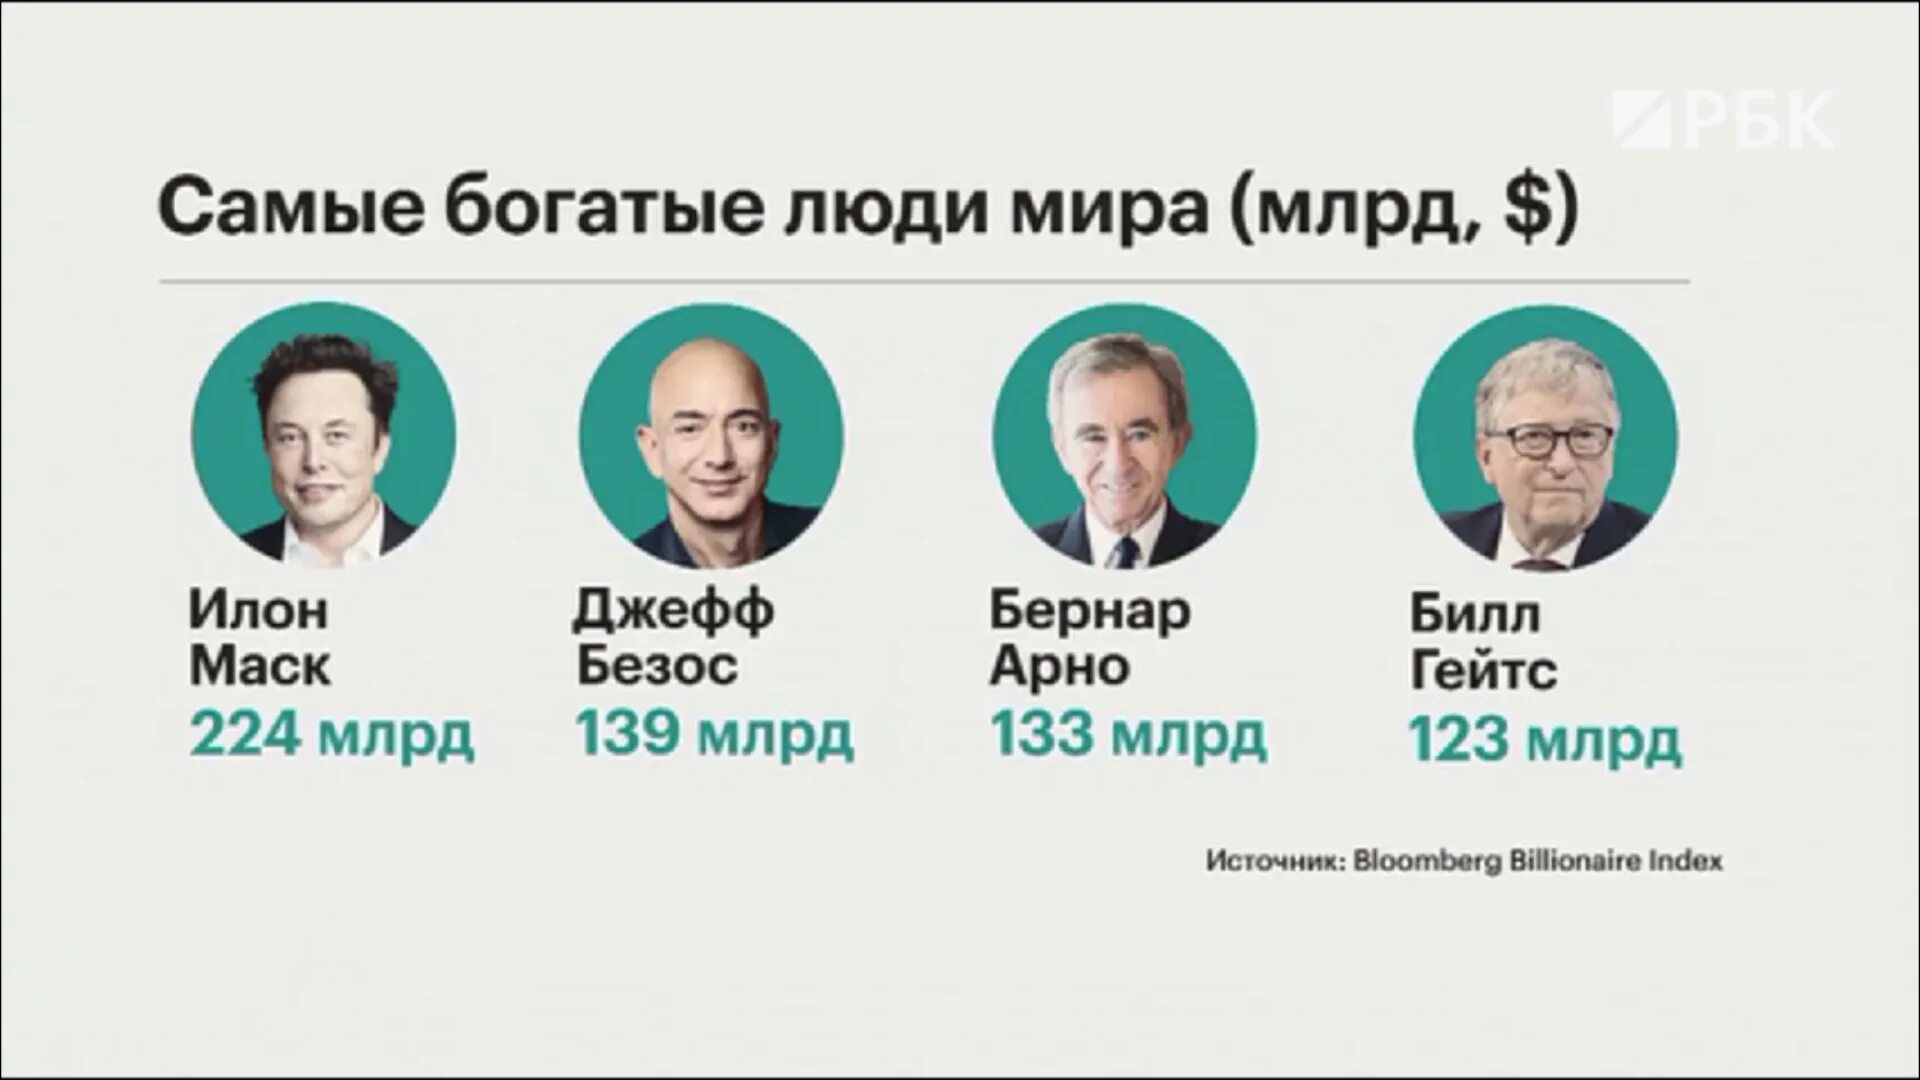 Список самых знаменитых богатых людей. Богатые люди Санкт-Петербурга. Самый богатый человек в мире. Самые богатые люди Санкт-Петербурга.